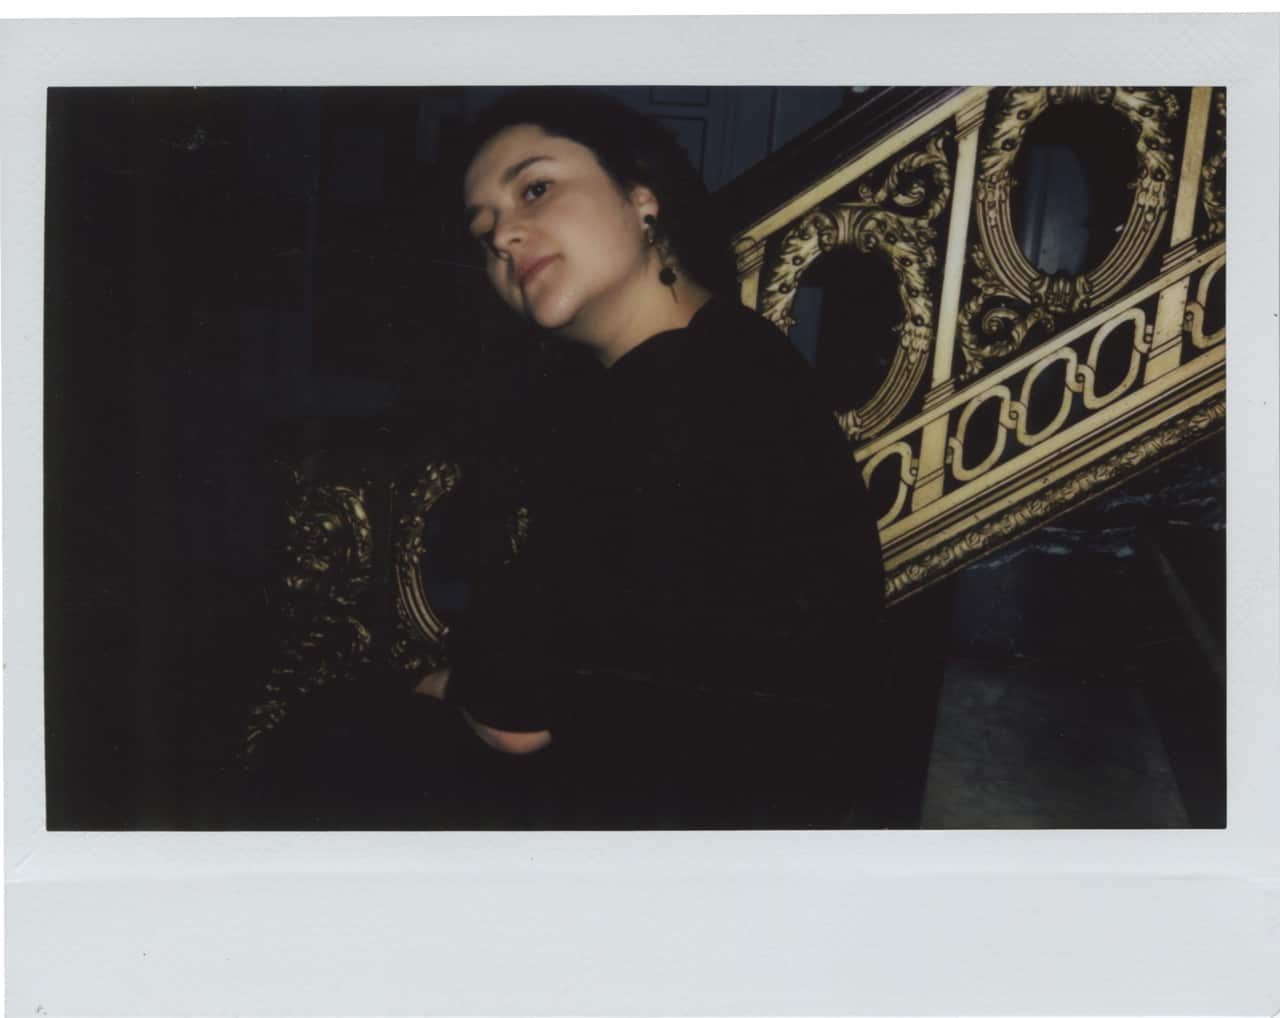 Camila Pinzon Polaroid